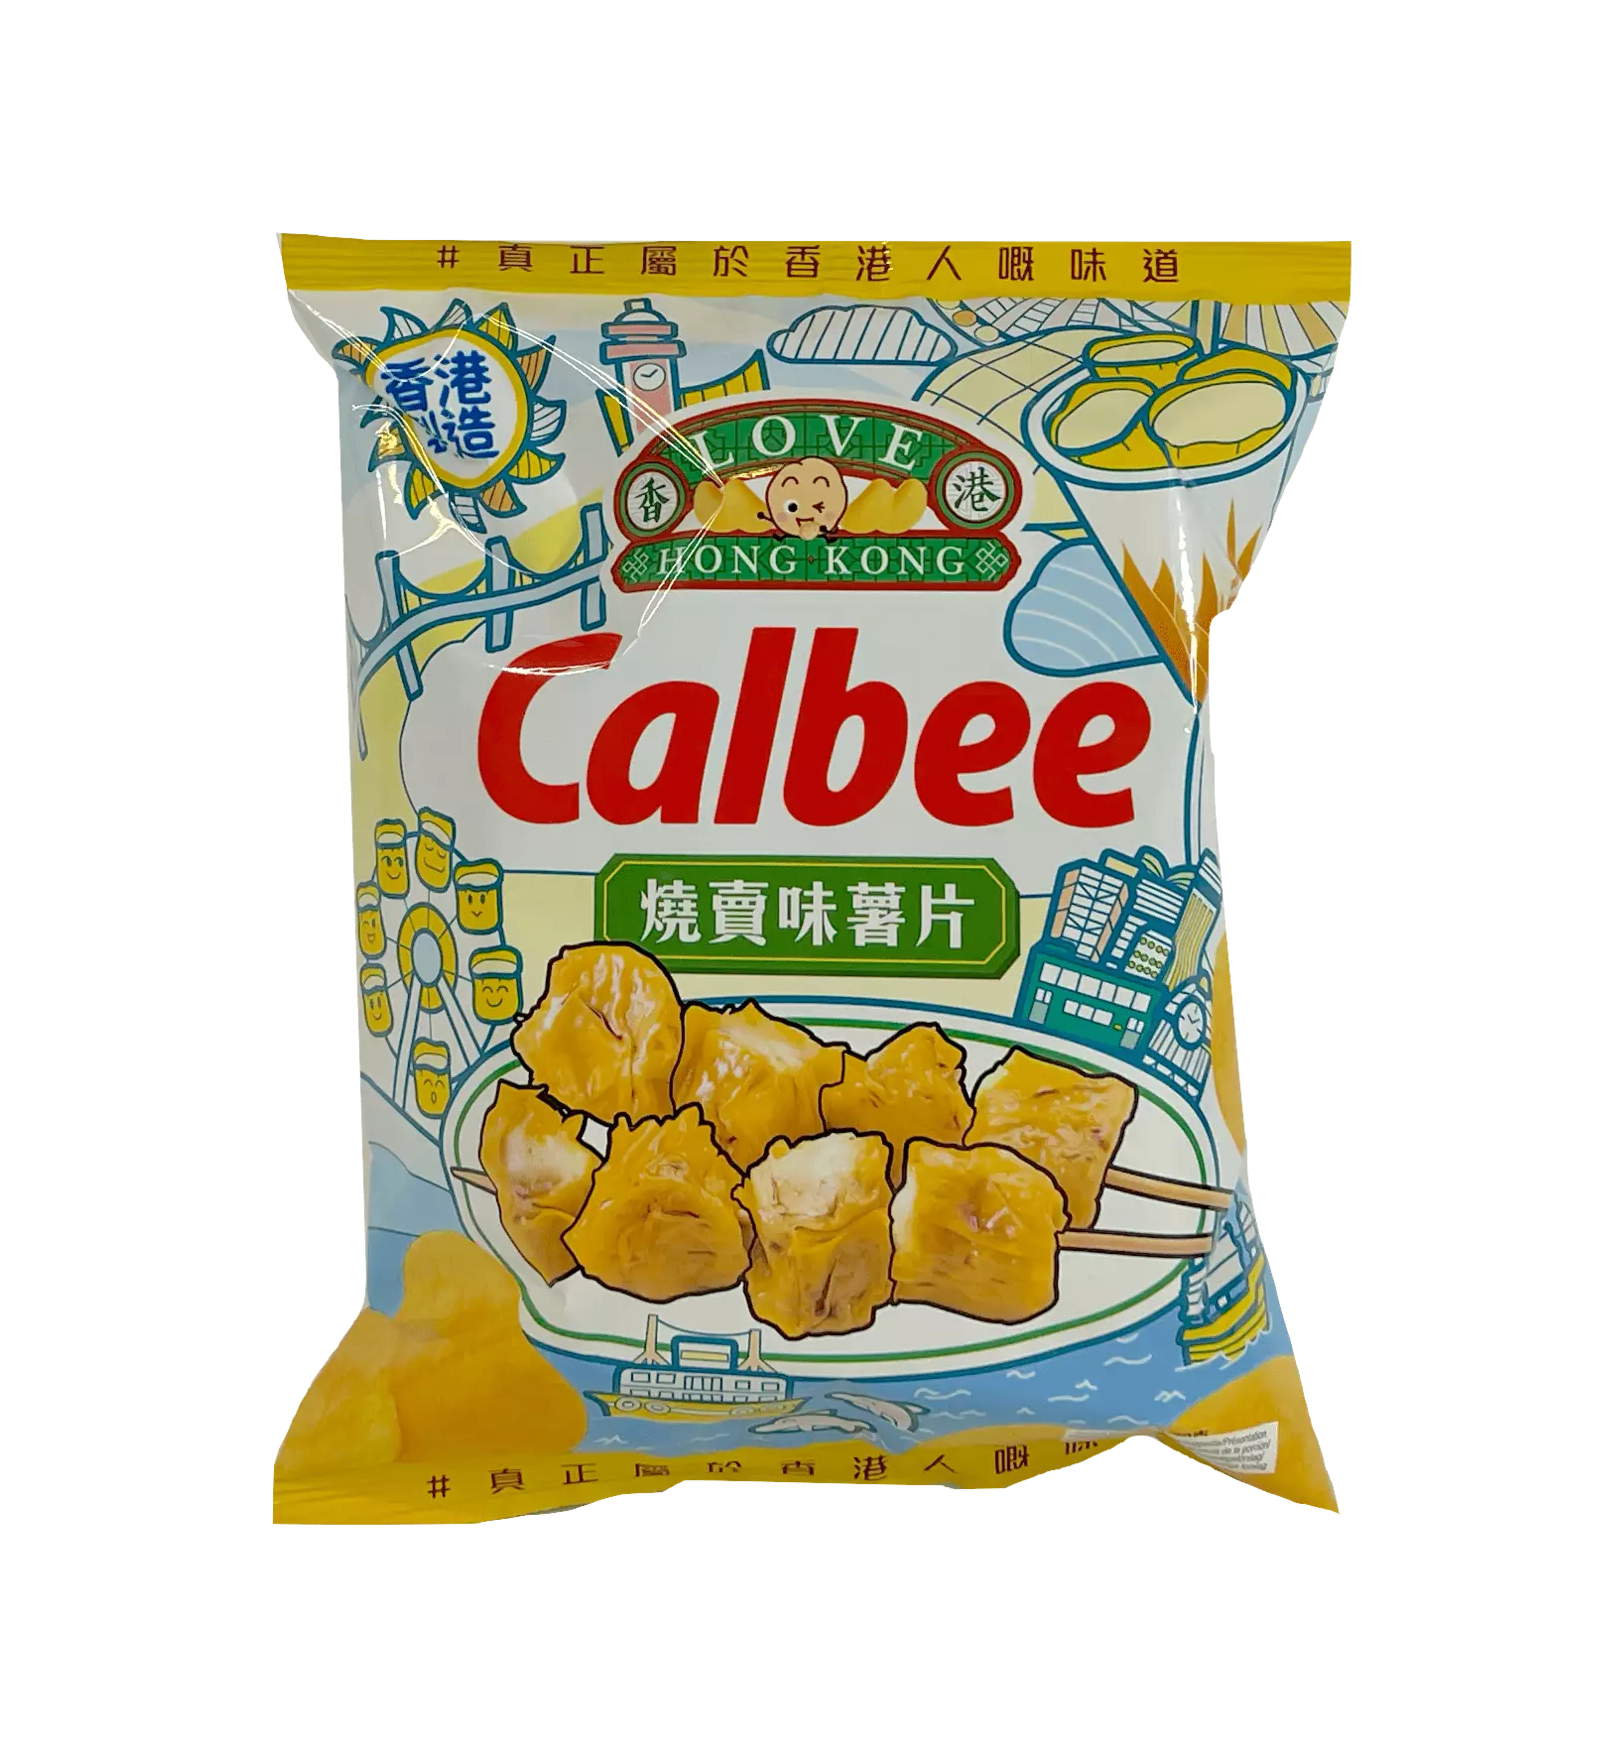 薯片 烧卖风味 70g Calbee 中国